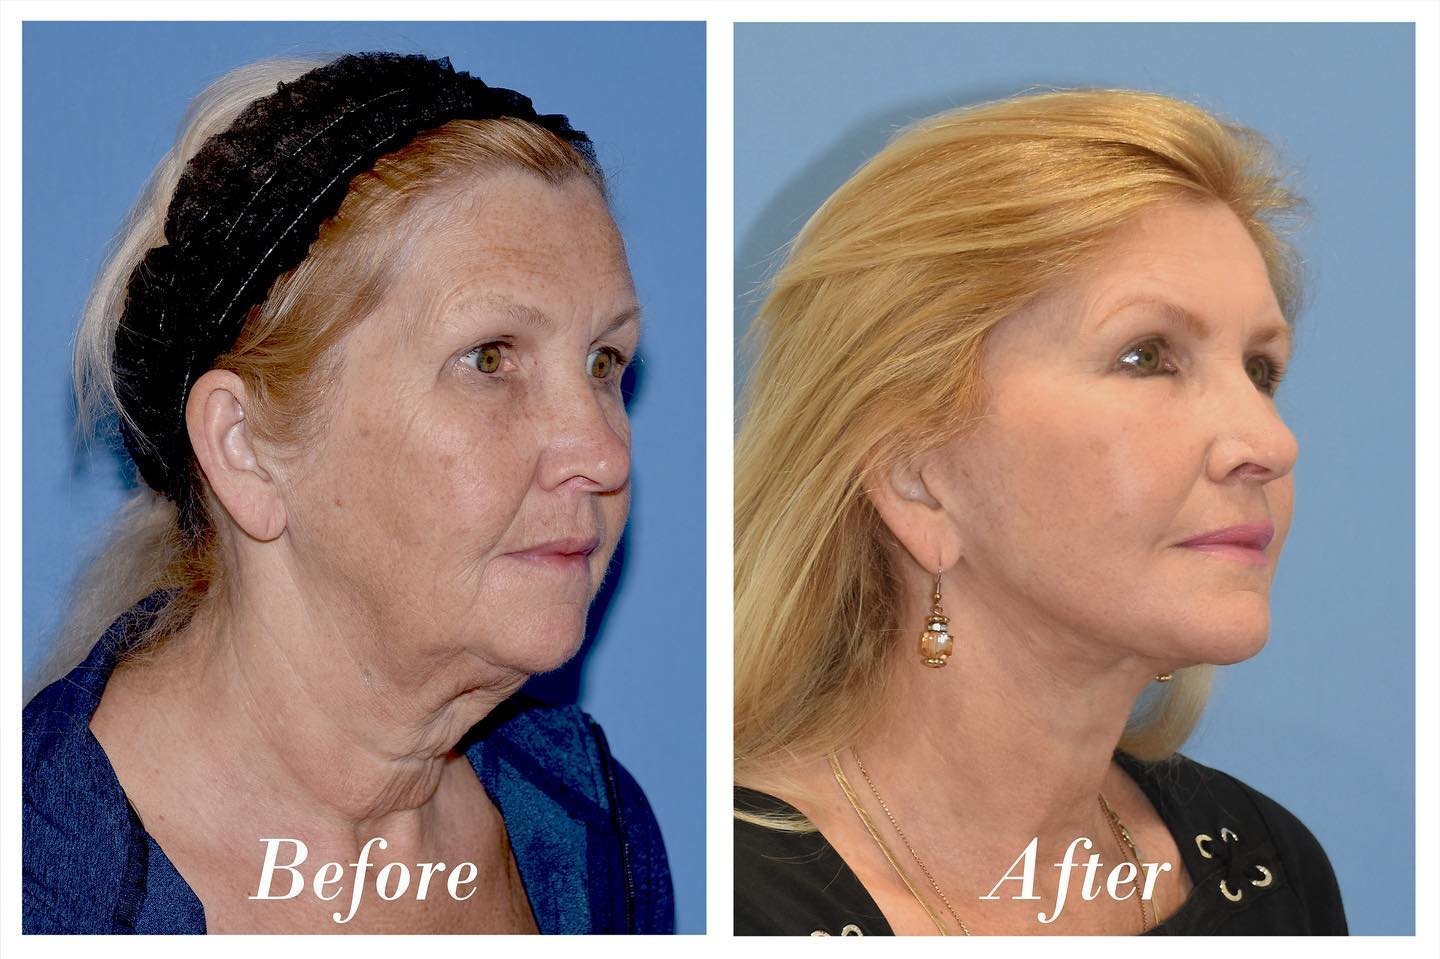 Facelift Upper Blepharoplasty Before & After Image